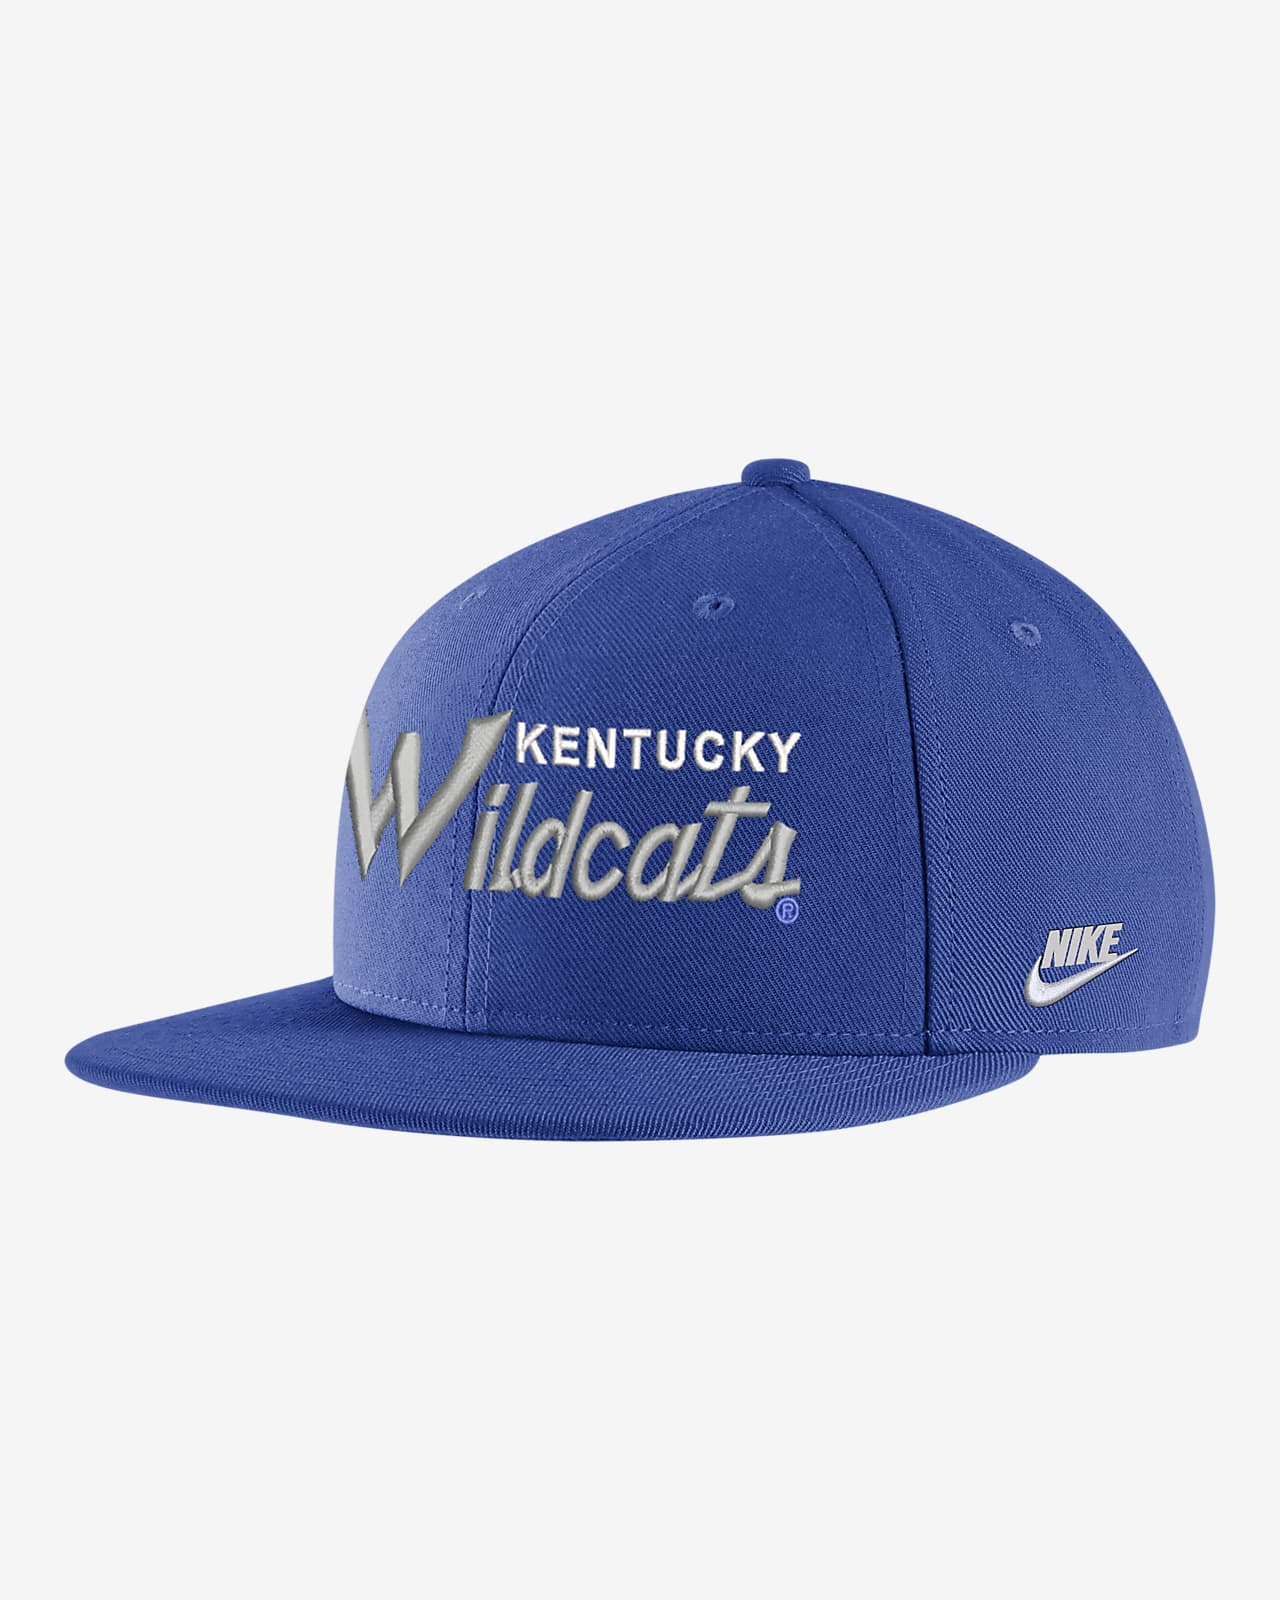 Gorra universitaria Nike Kentucky